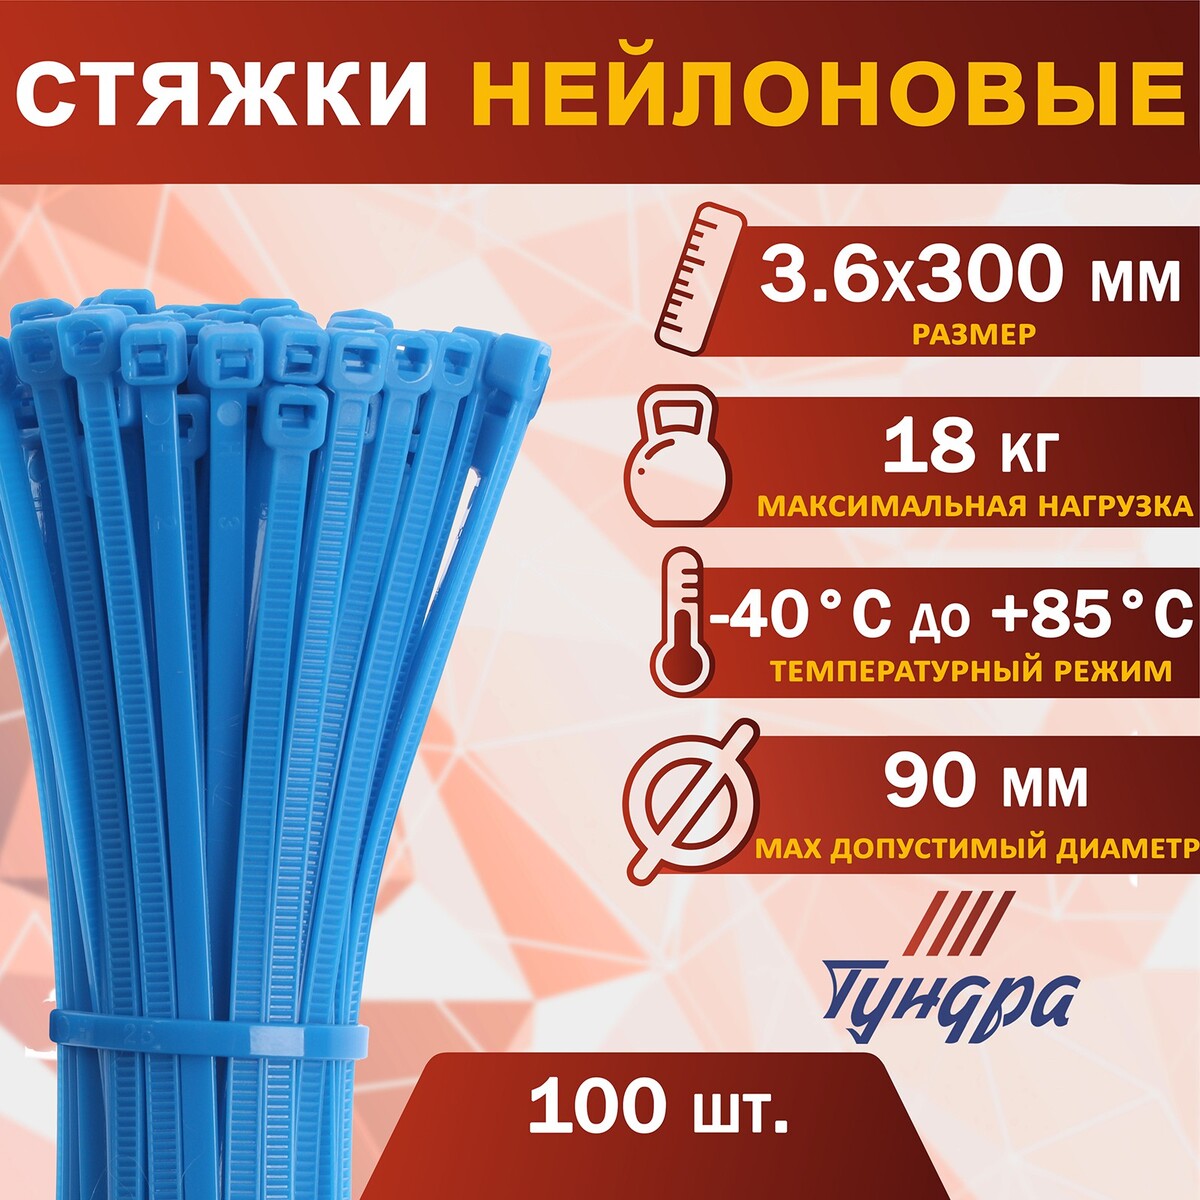 Хомут нейлоновый пластик тундра krep, для стяжки, 3.6х300 мм, цвет синий, в уп. 100 шт